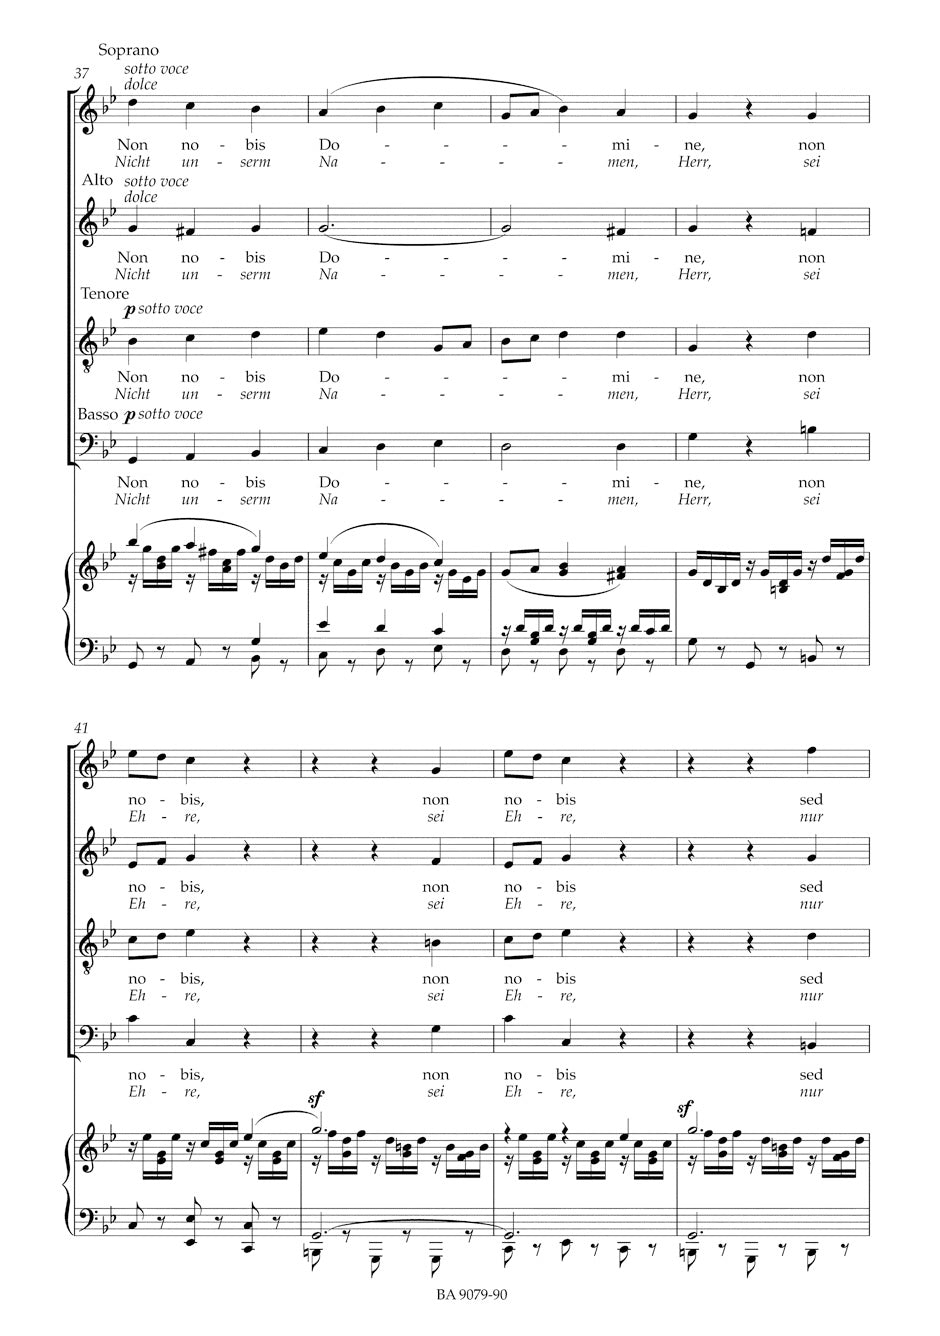 Mendelssohn: Psalm - "Non noto Domine" / "Nicht unserm Namen, Herr", MWV A 9, Op. 31